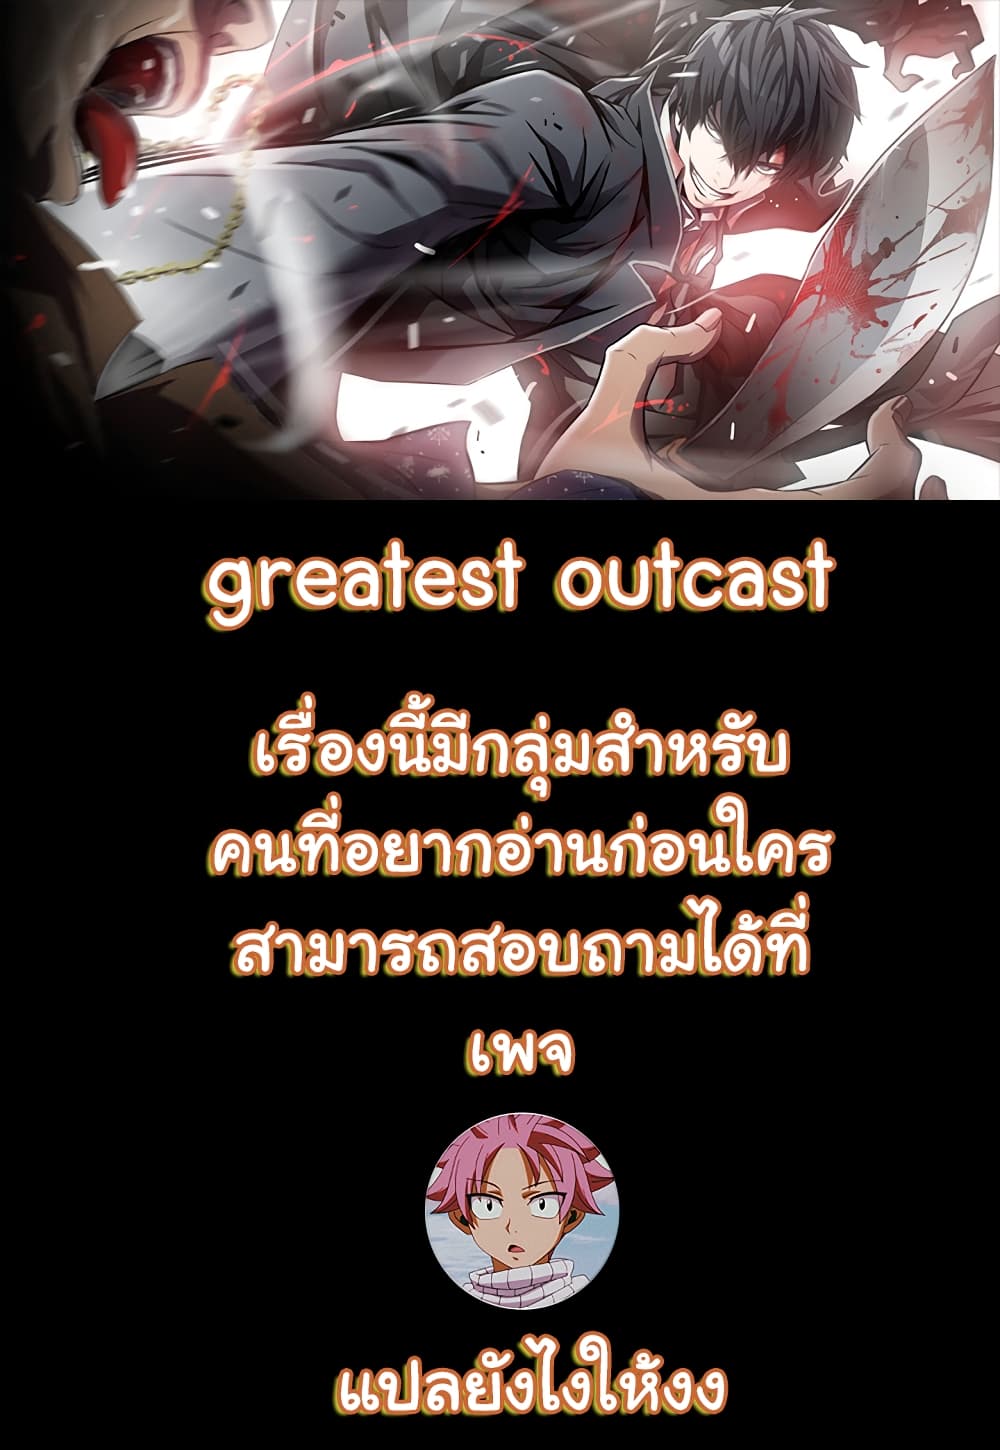 Greatest Outcast 4 (1)